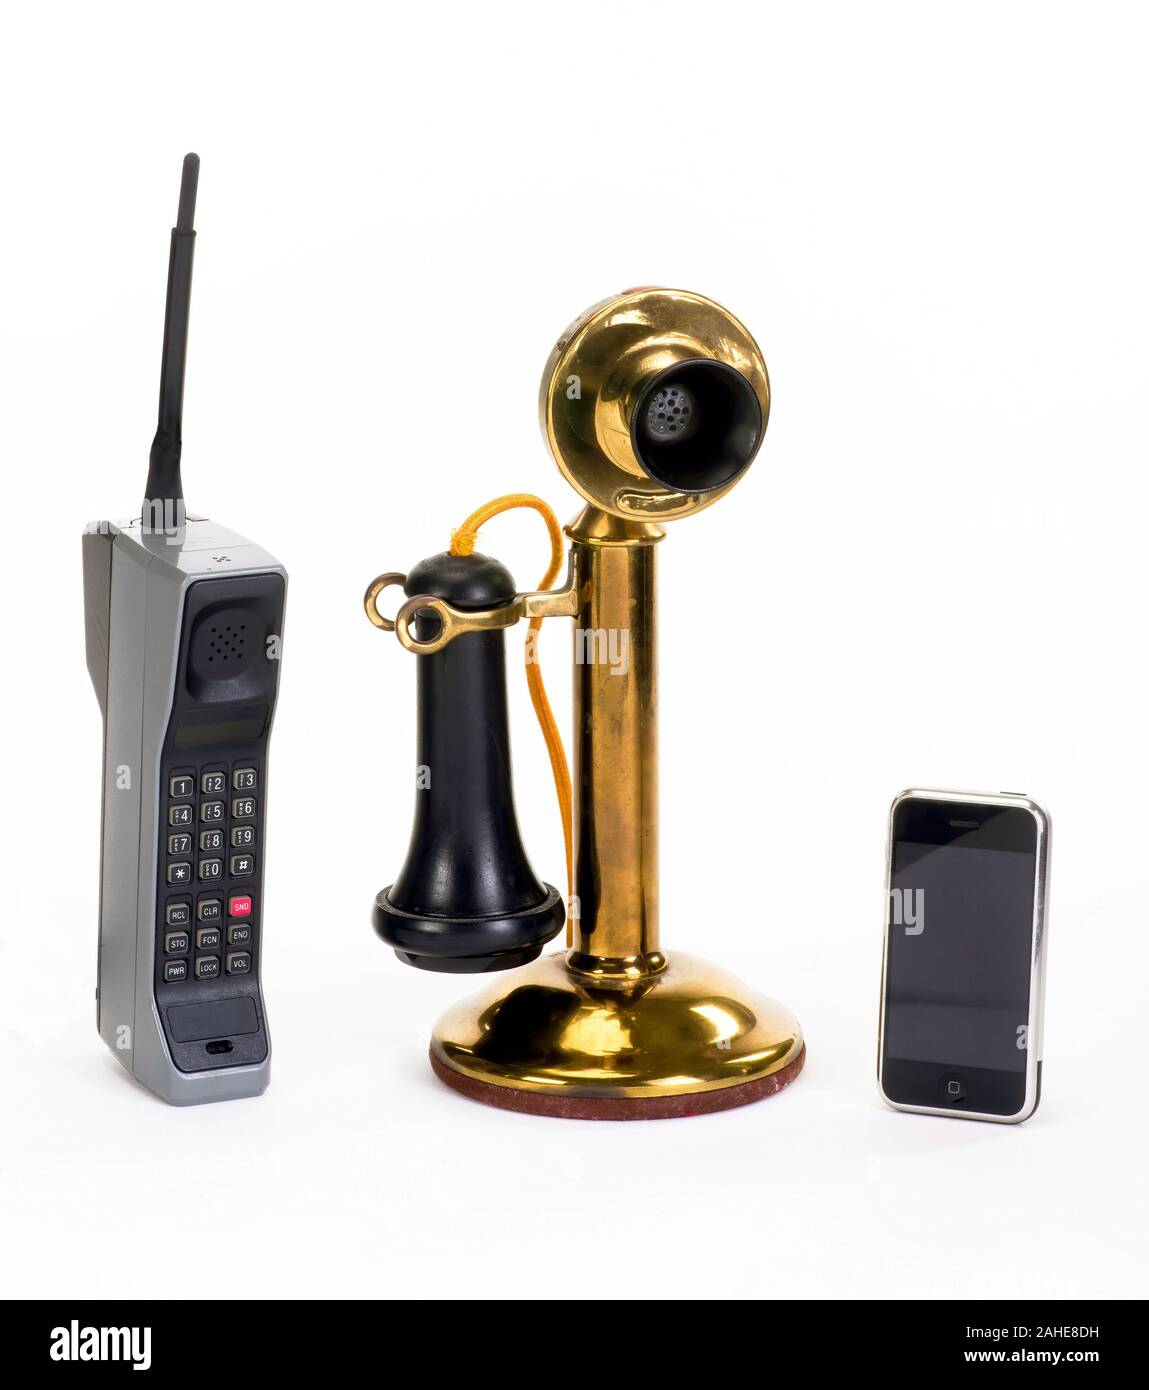 Première Brique cellulaire faite vers 1980, début de candle stick phone fait autour de 1910 et moderne smart phone. Banque D'Images